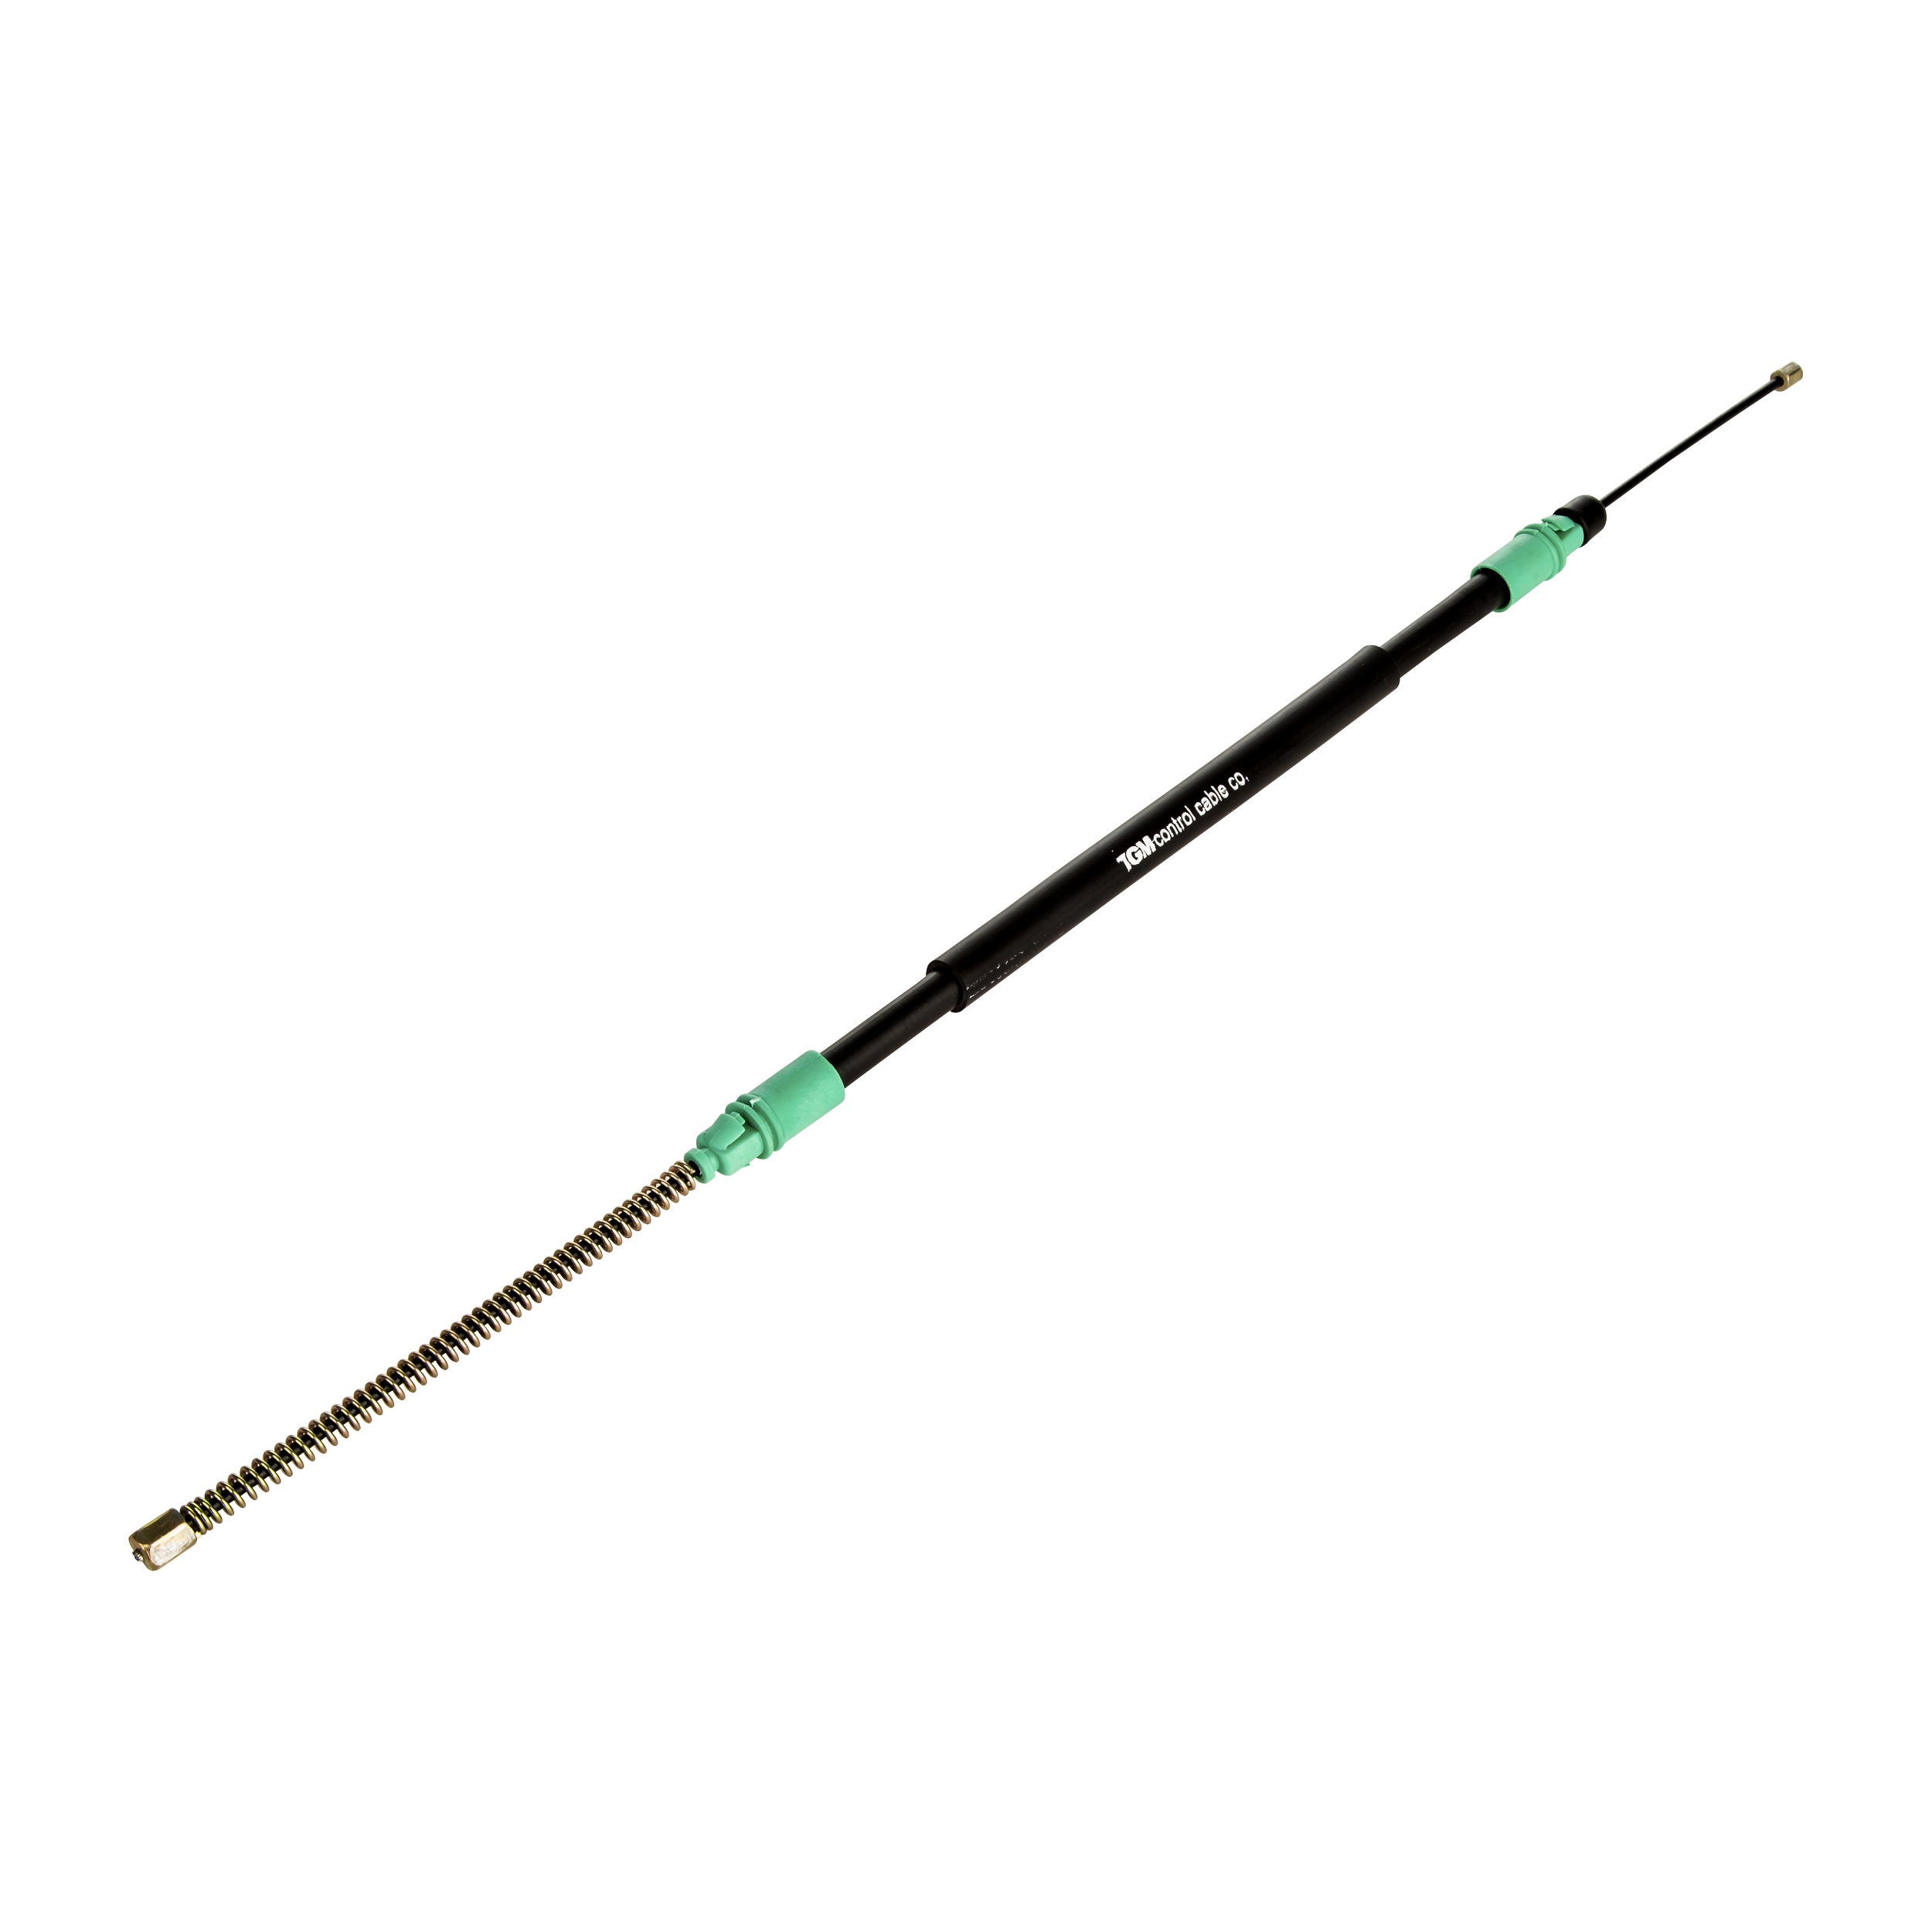  کابل ترمز دستی راست شرکت تکنو کابل سبزوار کد 100238 مناسب برای پژو پارس